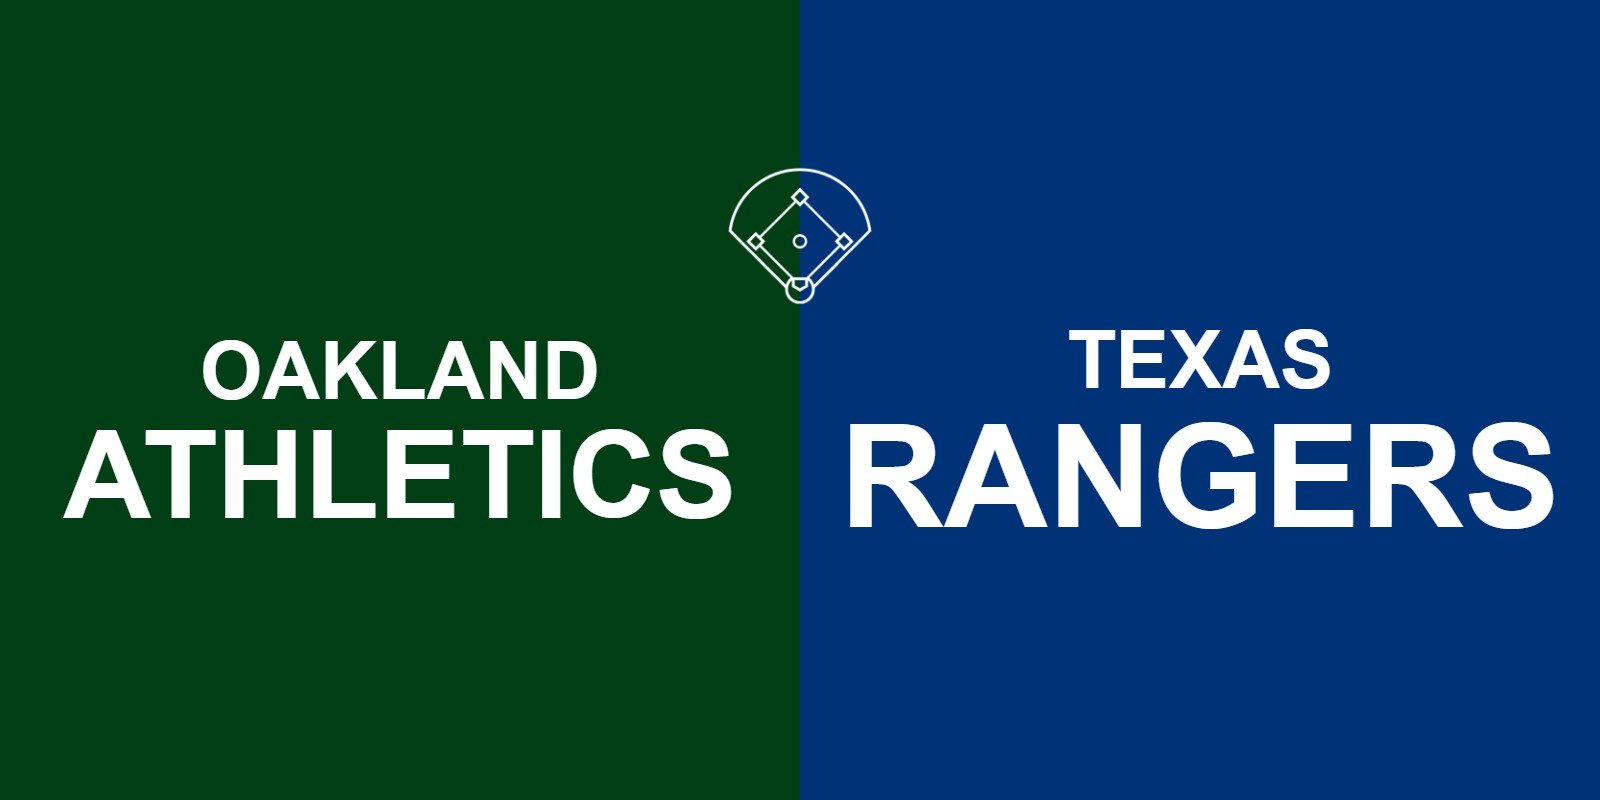 Athletics vs Rangers